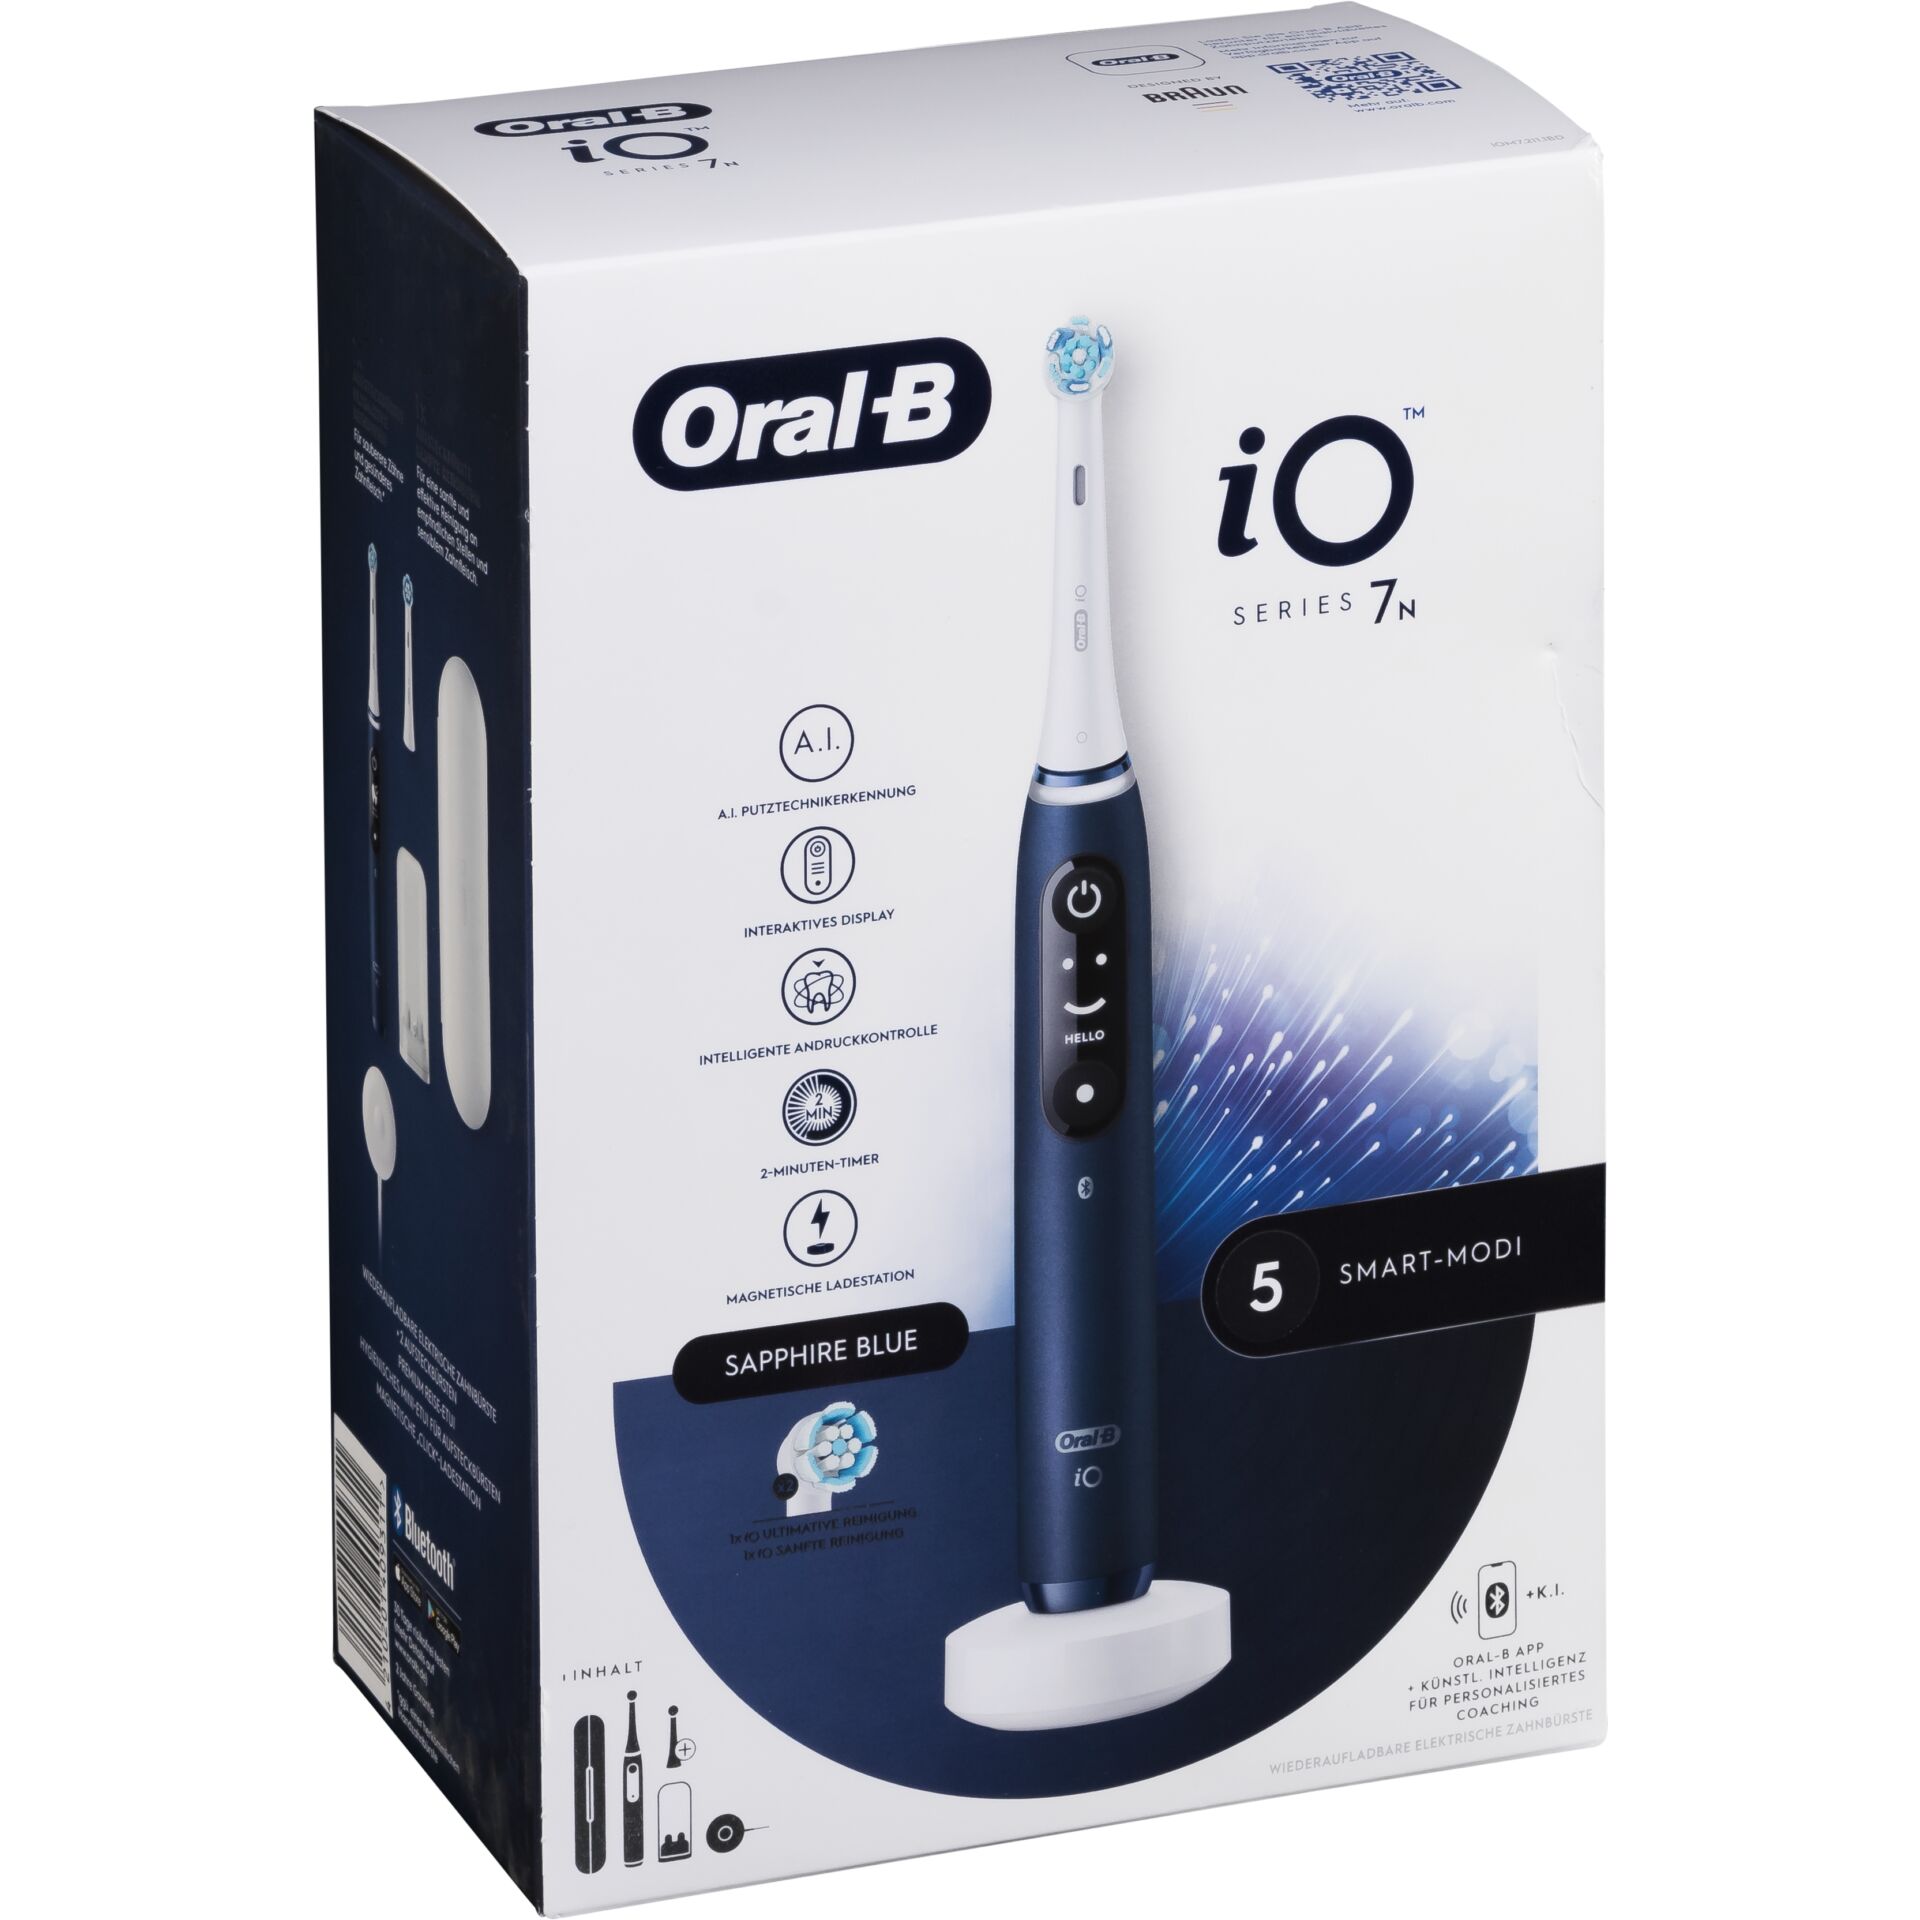 Oral-B iO Series 7N Sapphire blu